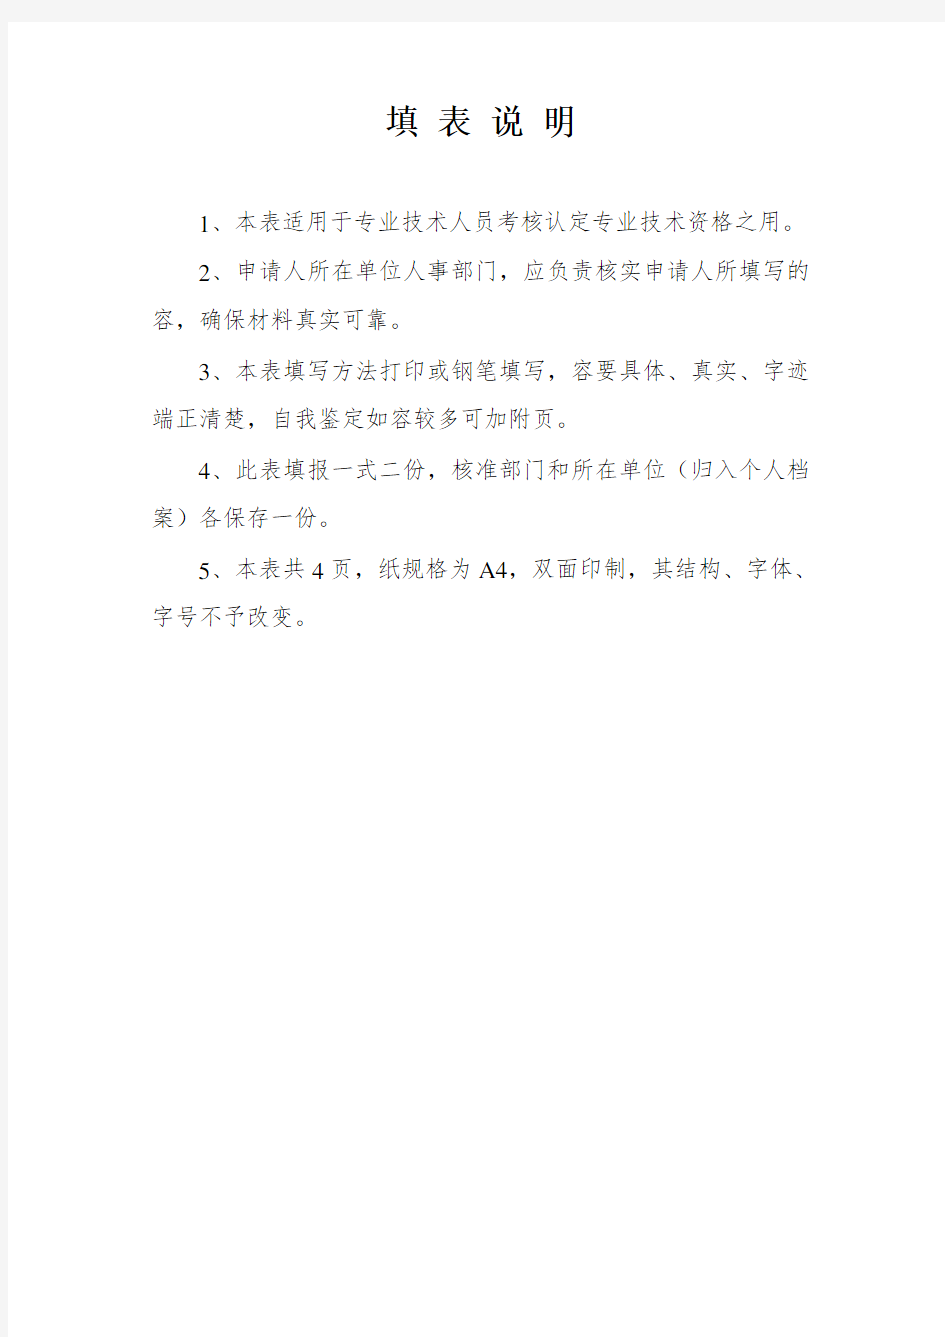 广东省初级职称评定条件及相关表格(全套)